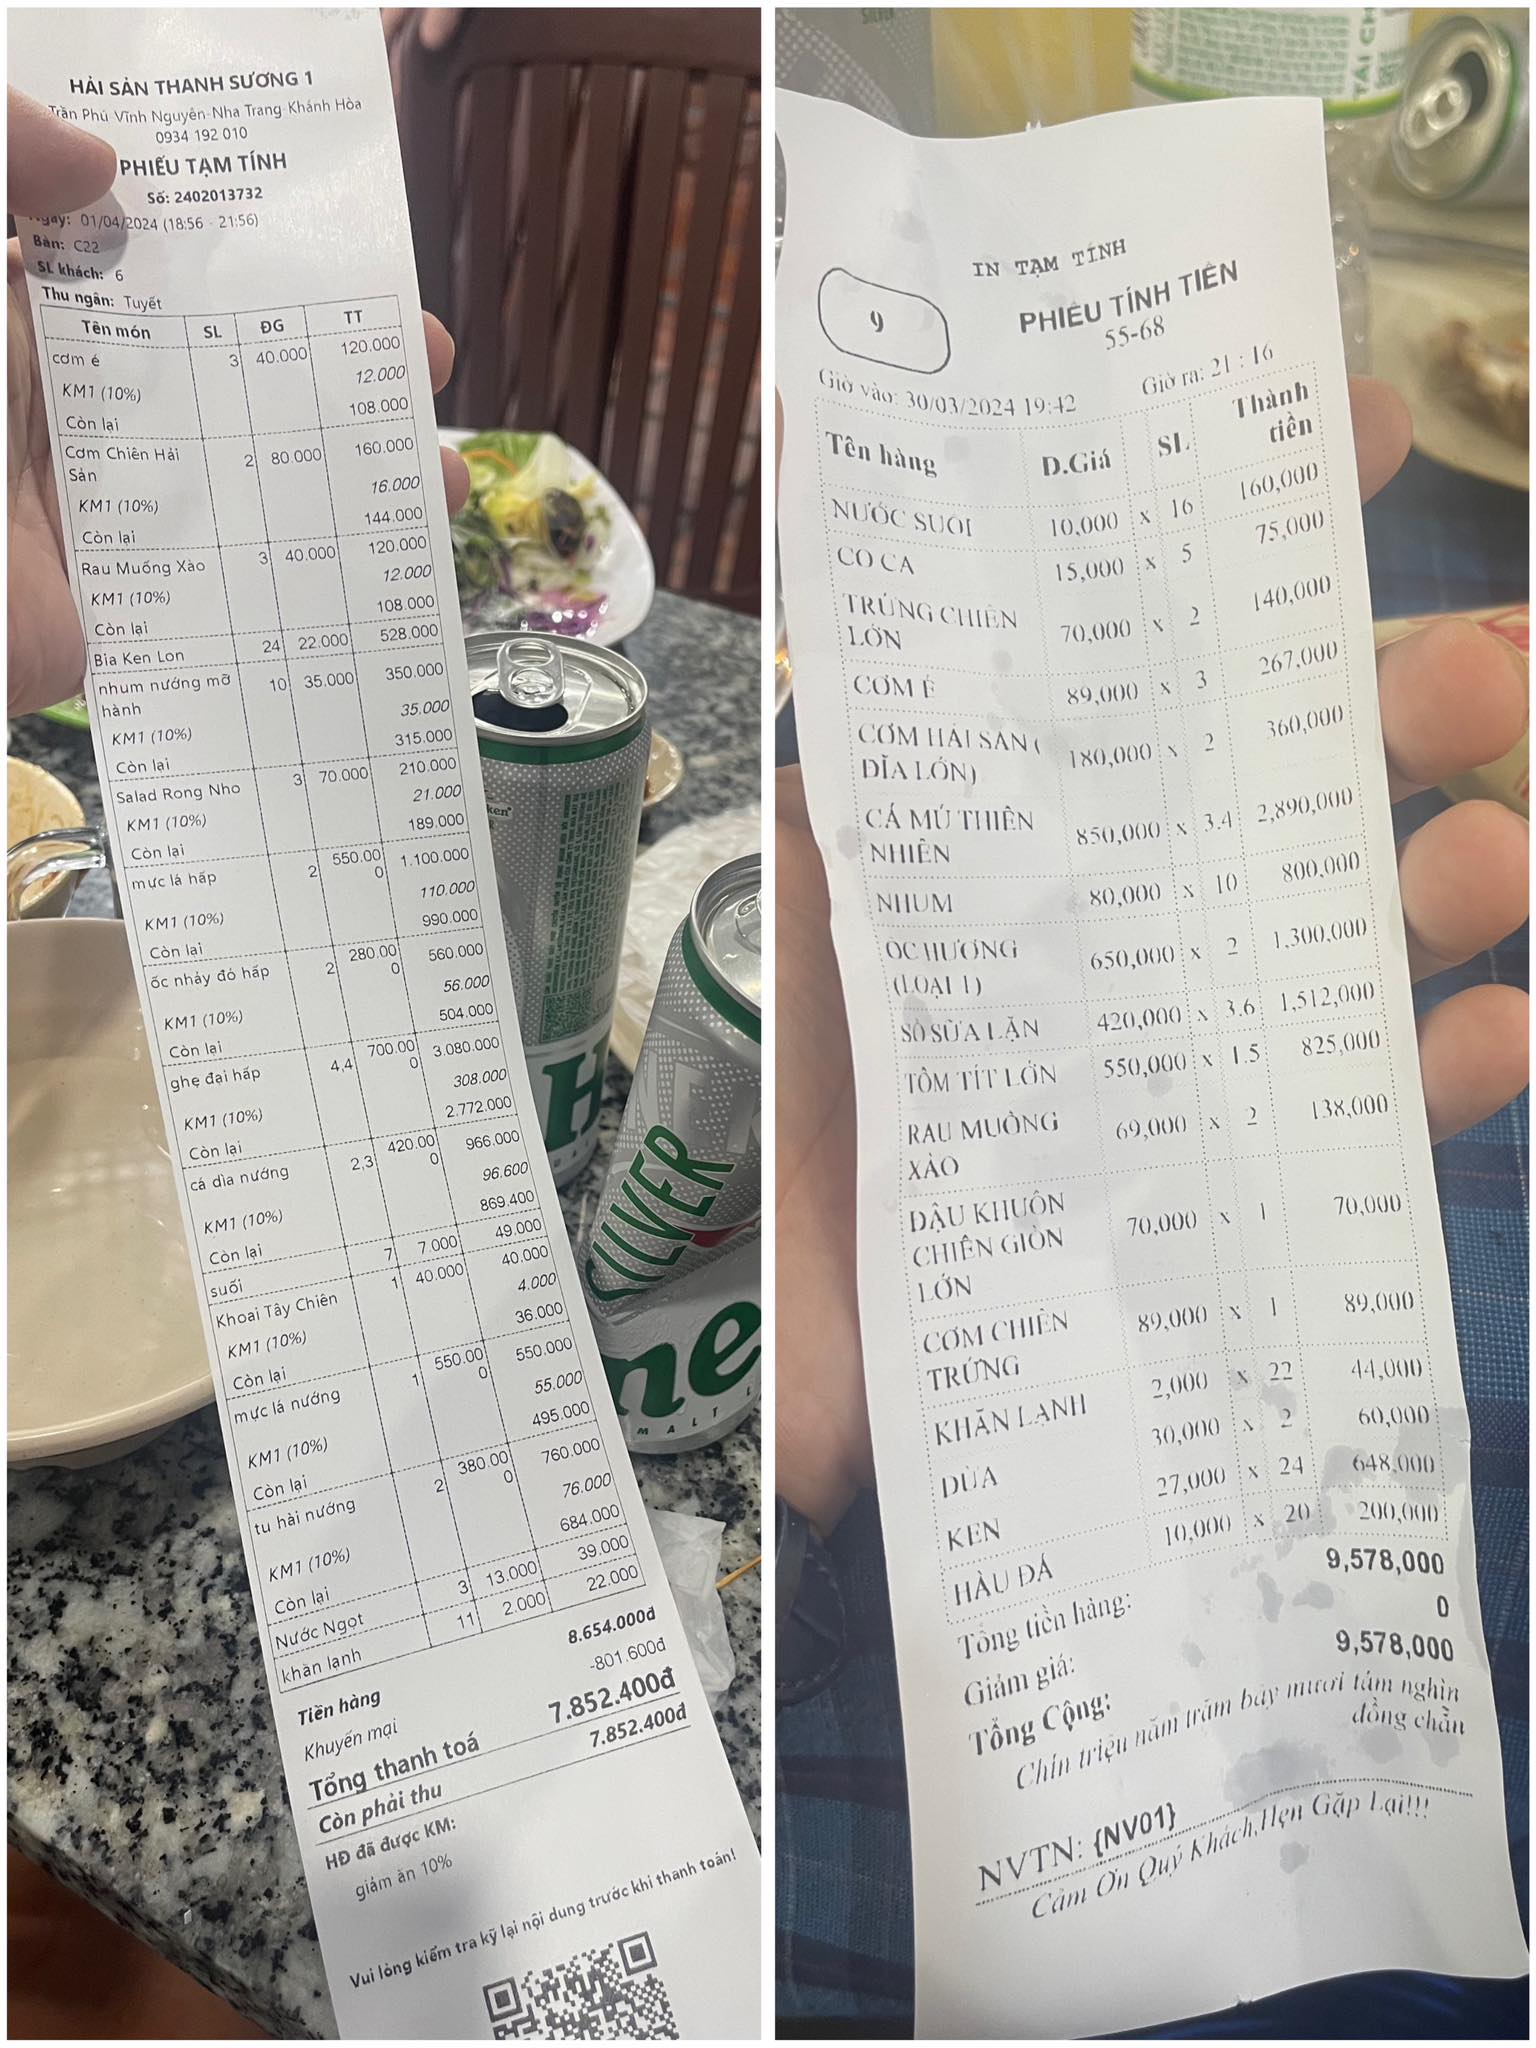 Anh Cường so sánh giữa hóa đơn nhà hàng thật (phải) và nhà hàng giả mạo (trái). Ảnh: Nhân vật cung cấp